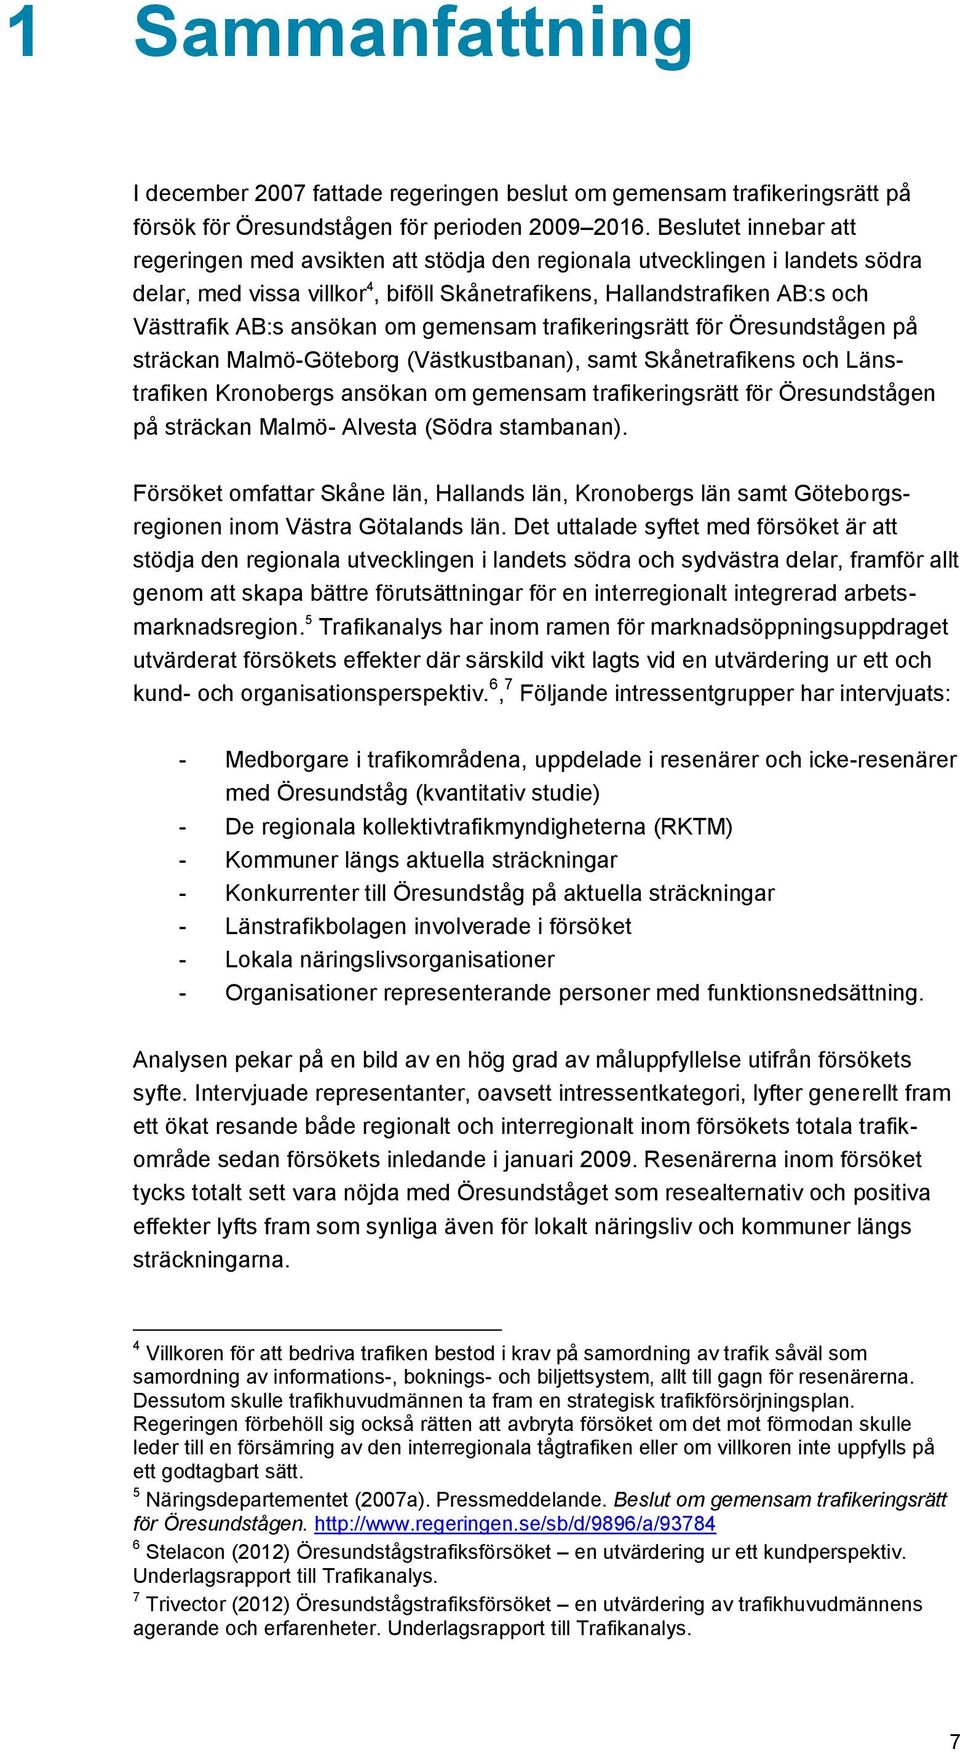 om gemensam trafikeringsrätt för Öresundstågen på sträckan Malmö-Göteborg (Västkustbanan), samt Skånetrafikens och Länstrafiken Kronobergs ansökan om gemensam trafikeringsrätt för Öresundstågen på